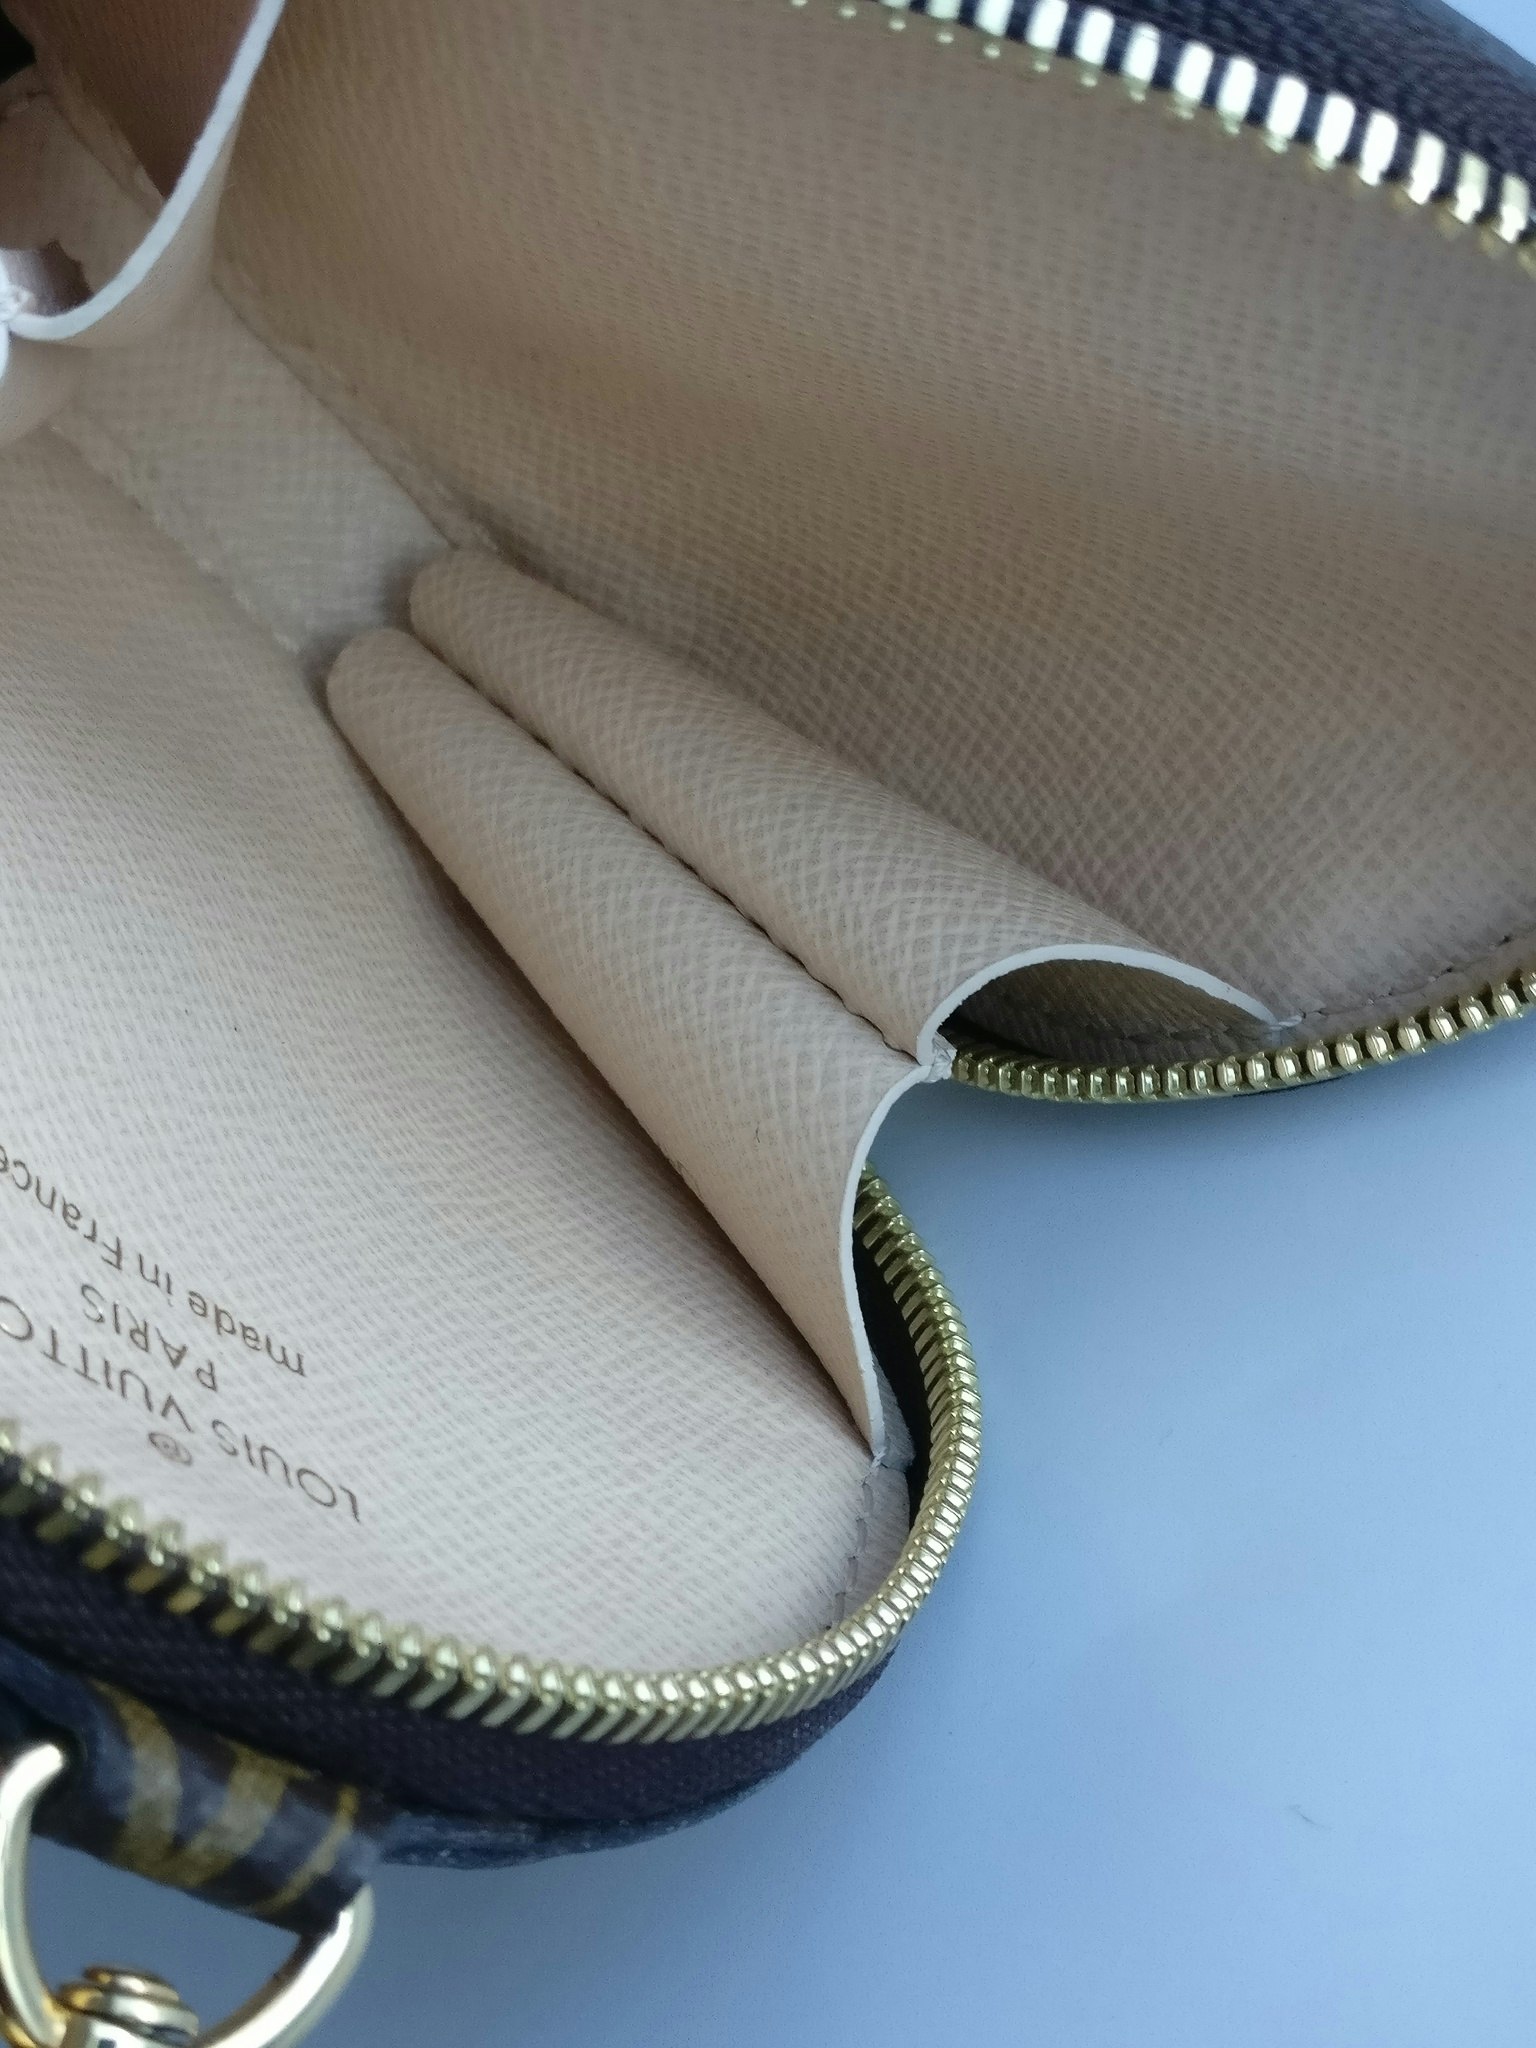 Louis Vuitton Monogram Multi-Pochette Accessories Round Coin Purse – Coco  Approved Studio